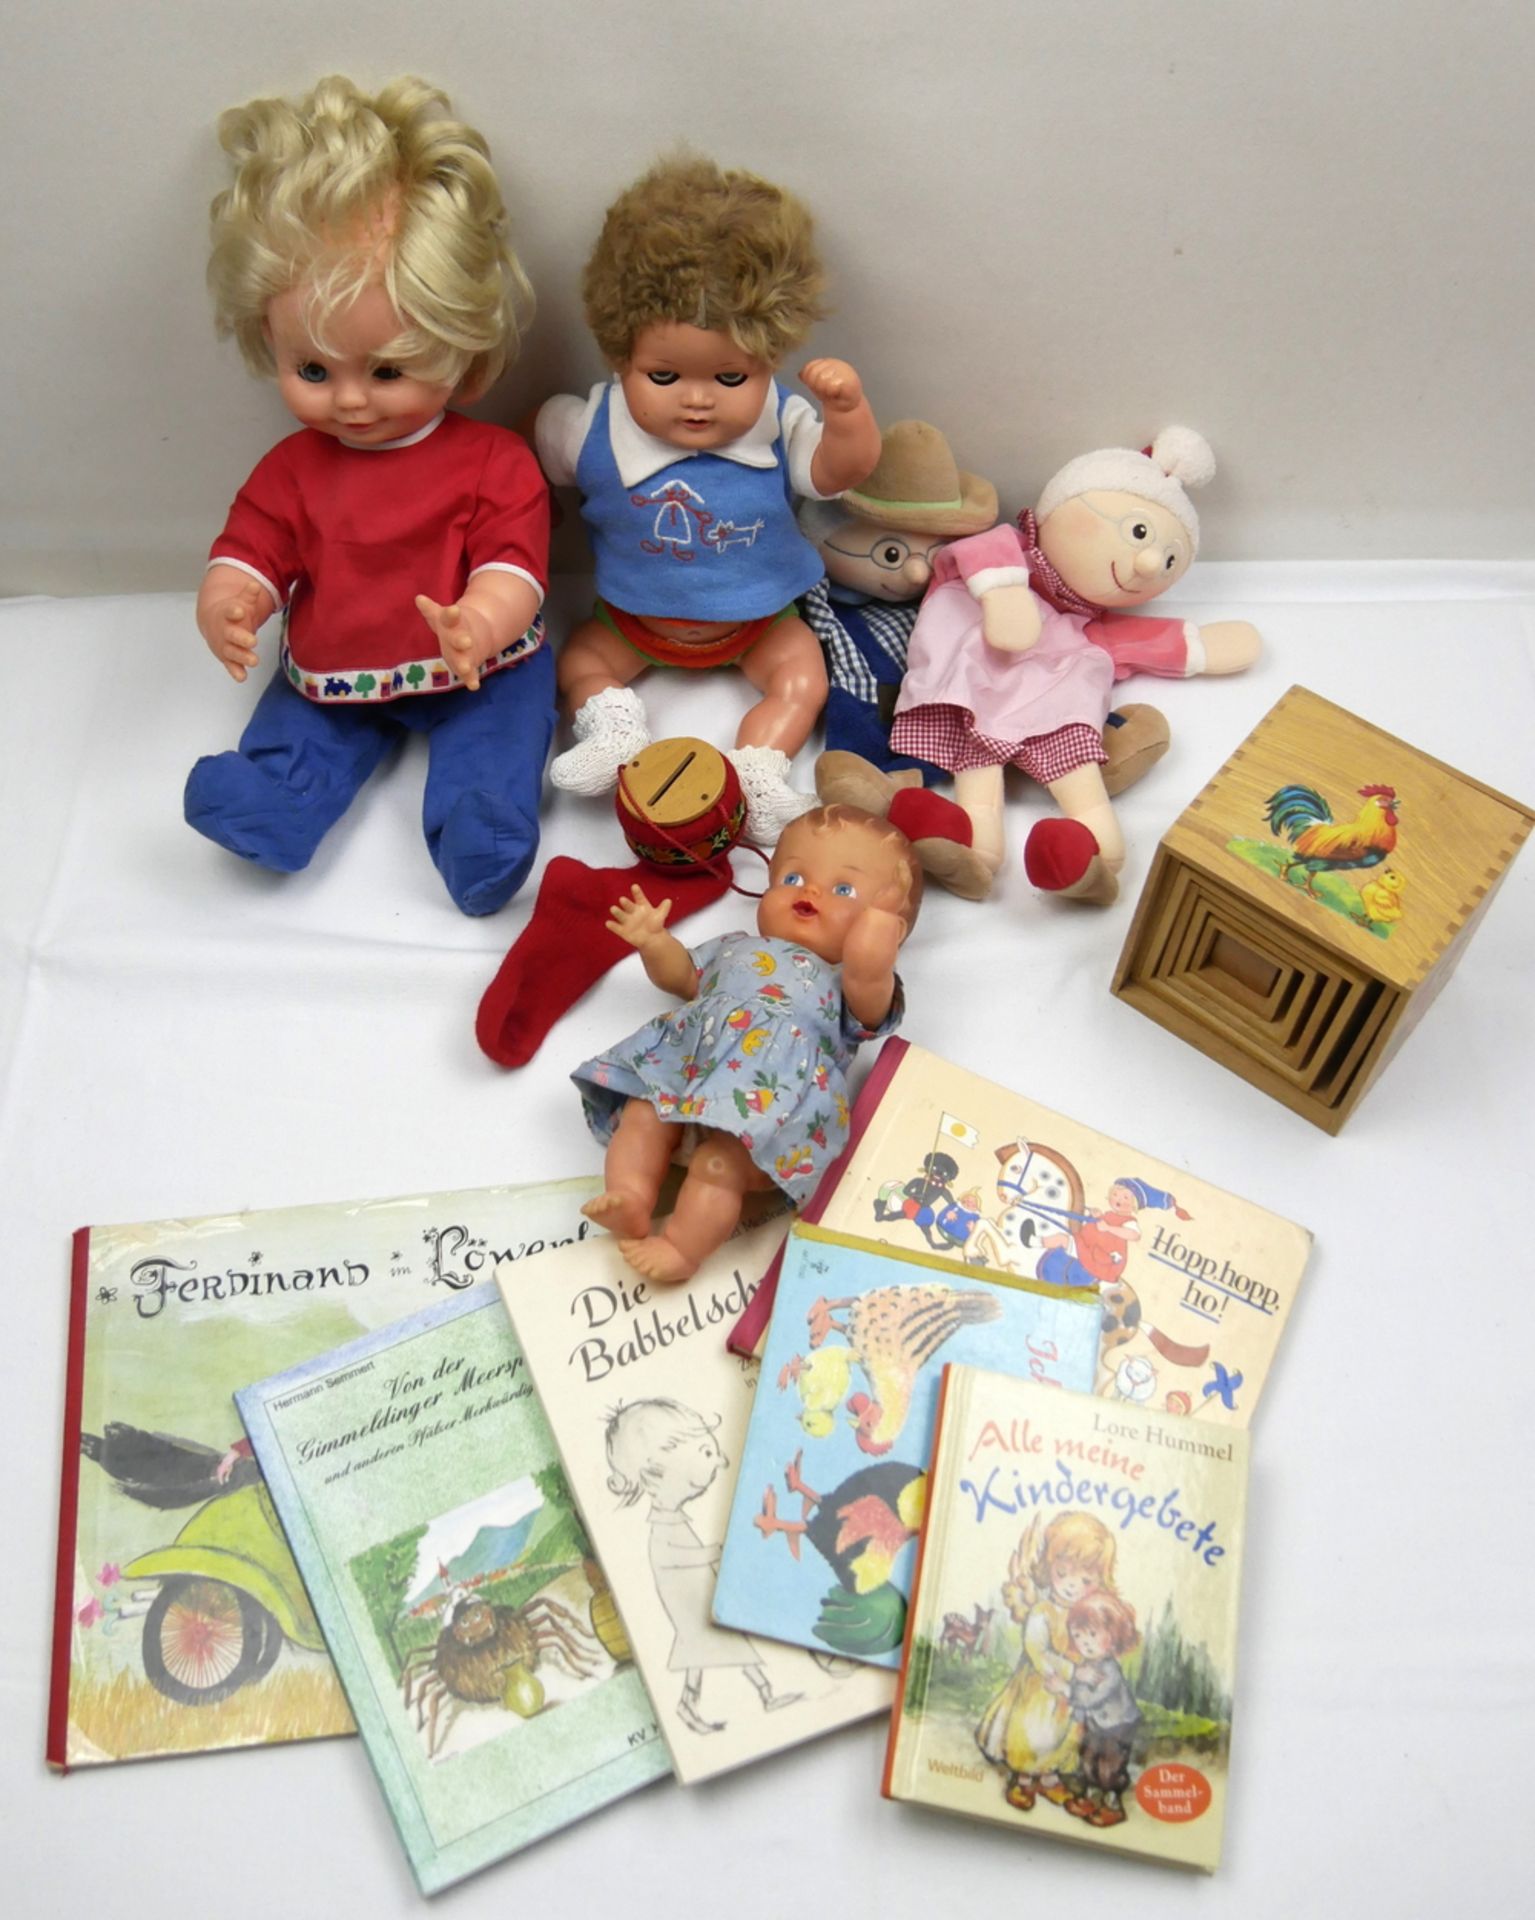 Lot Spielzeug aus Auflösung, dabei Kinderbücher, Kuschelpuppen, Stapelklötze, Puppen, teilweise